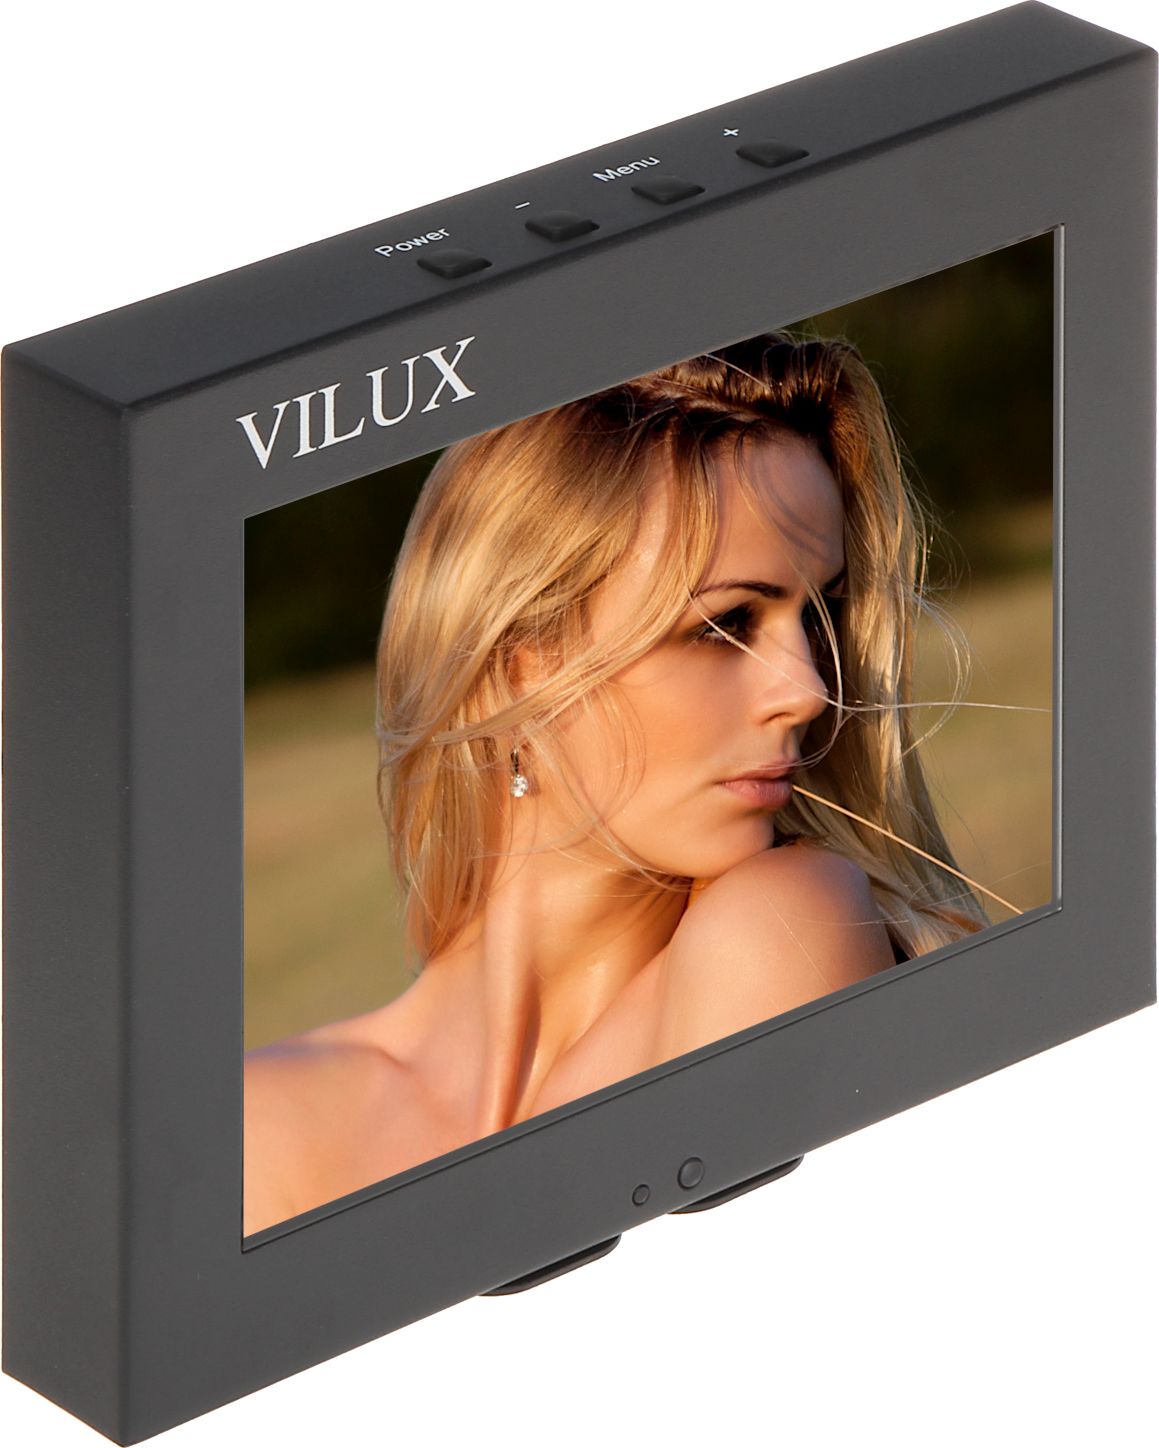 Monitor Vilux VMT-085M VMT-085M (5902887011634) monitors